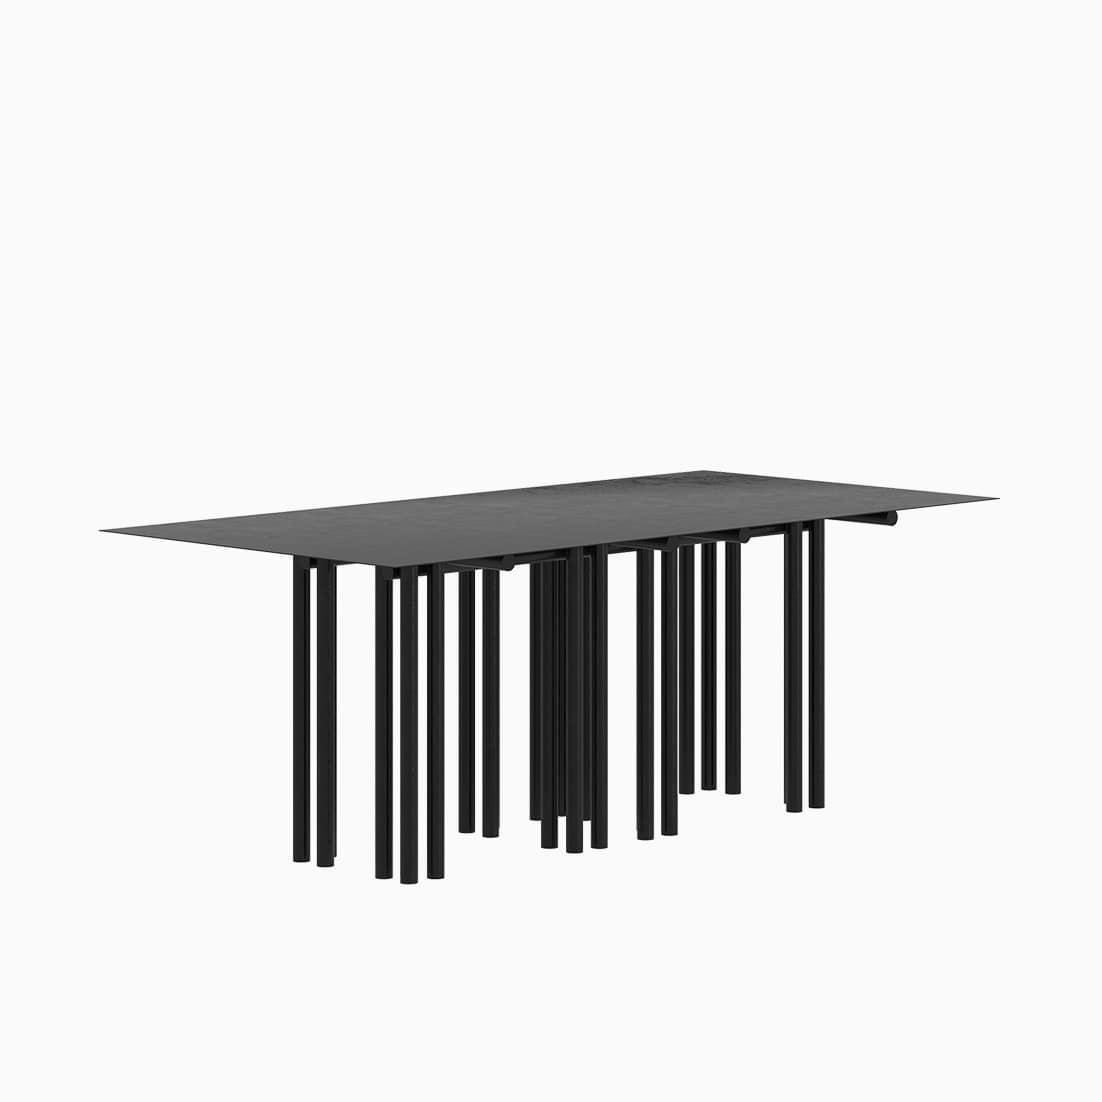 Der Dolmen Dining Table ist ein monolithisches Stück, das als Esstisch für den Innen- und Außenbereich konzipiert wurde. 
Von Hand aus galvanisiertem Aluminium gefertigt und mit einer matten elektrostatischen Beschichtung versehen, kann seine Größe